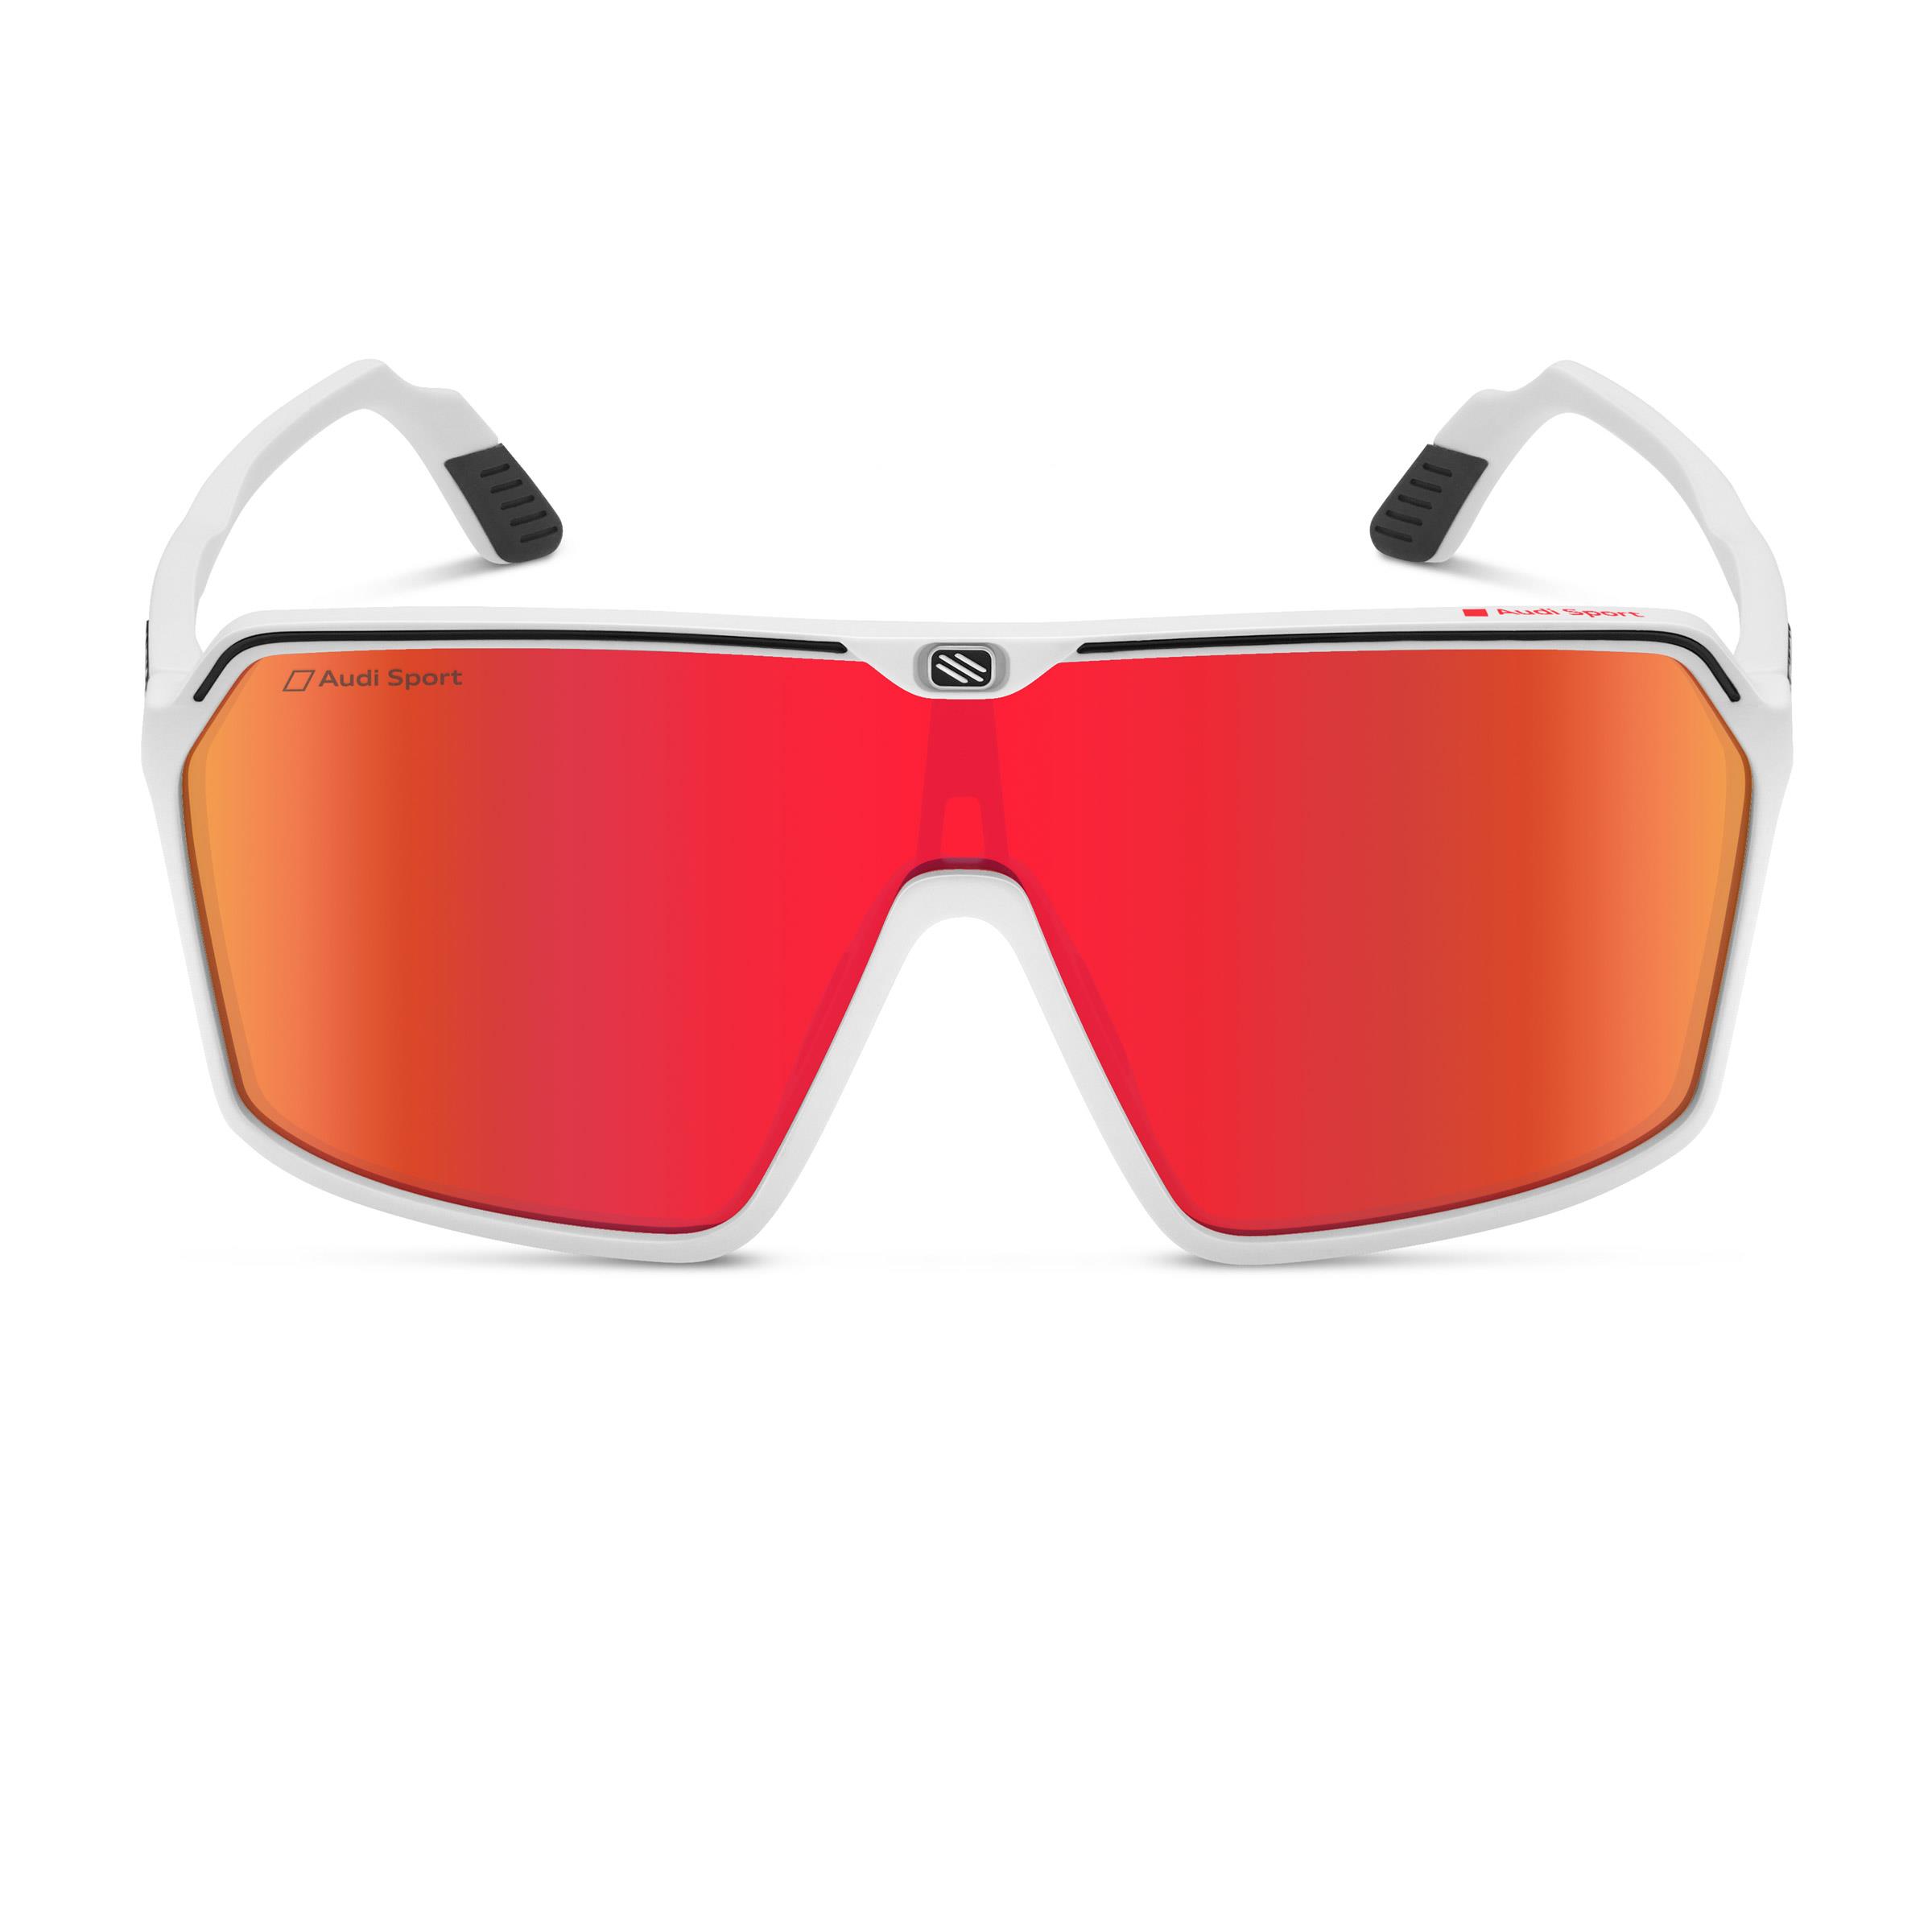 Audi Sport Sonnenbrille verspiegelt weiß/rot 3112200510